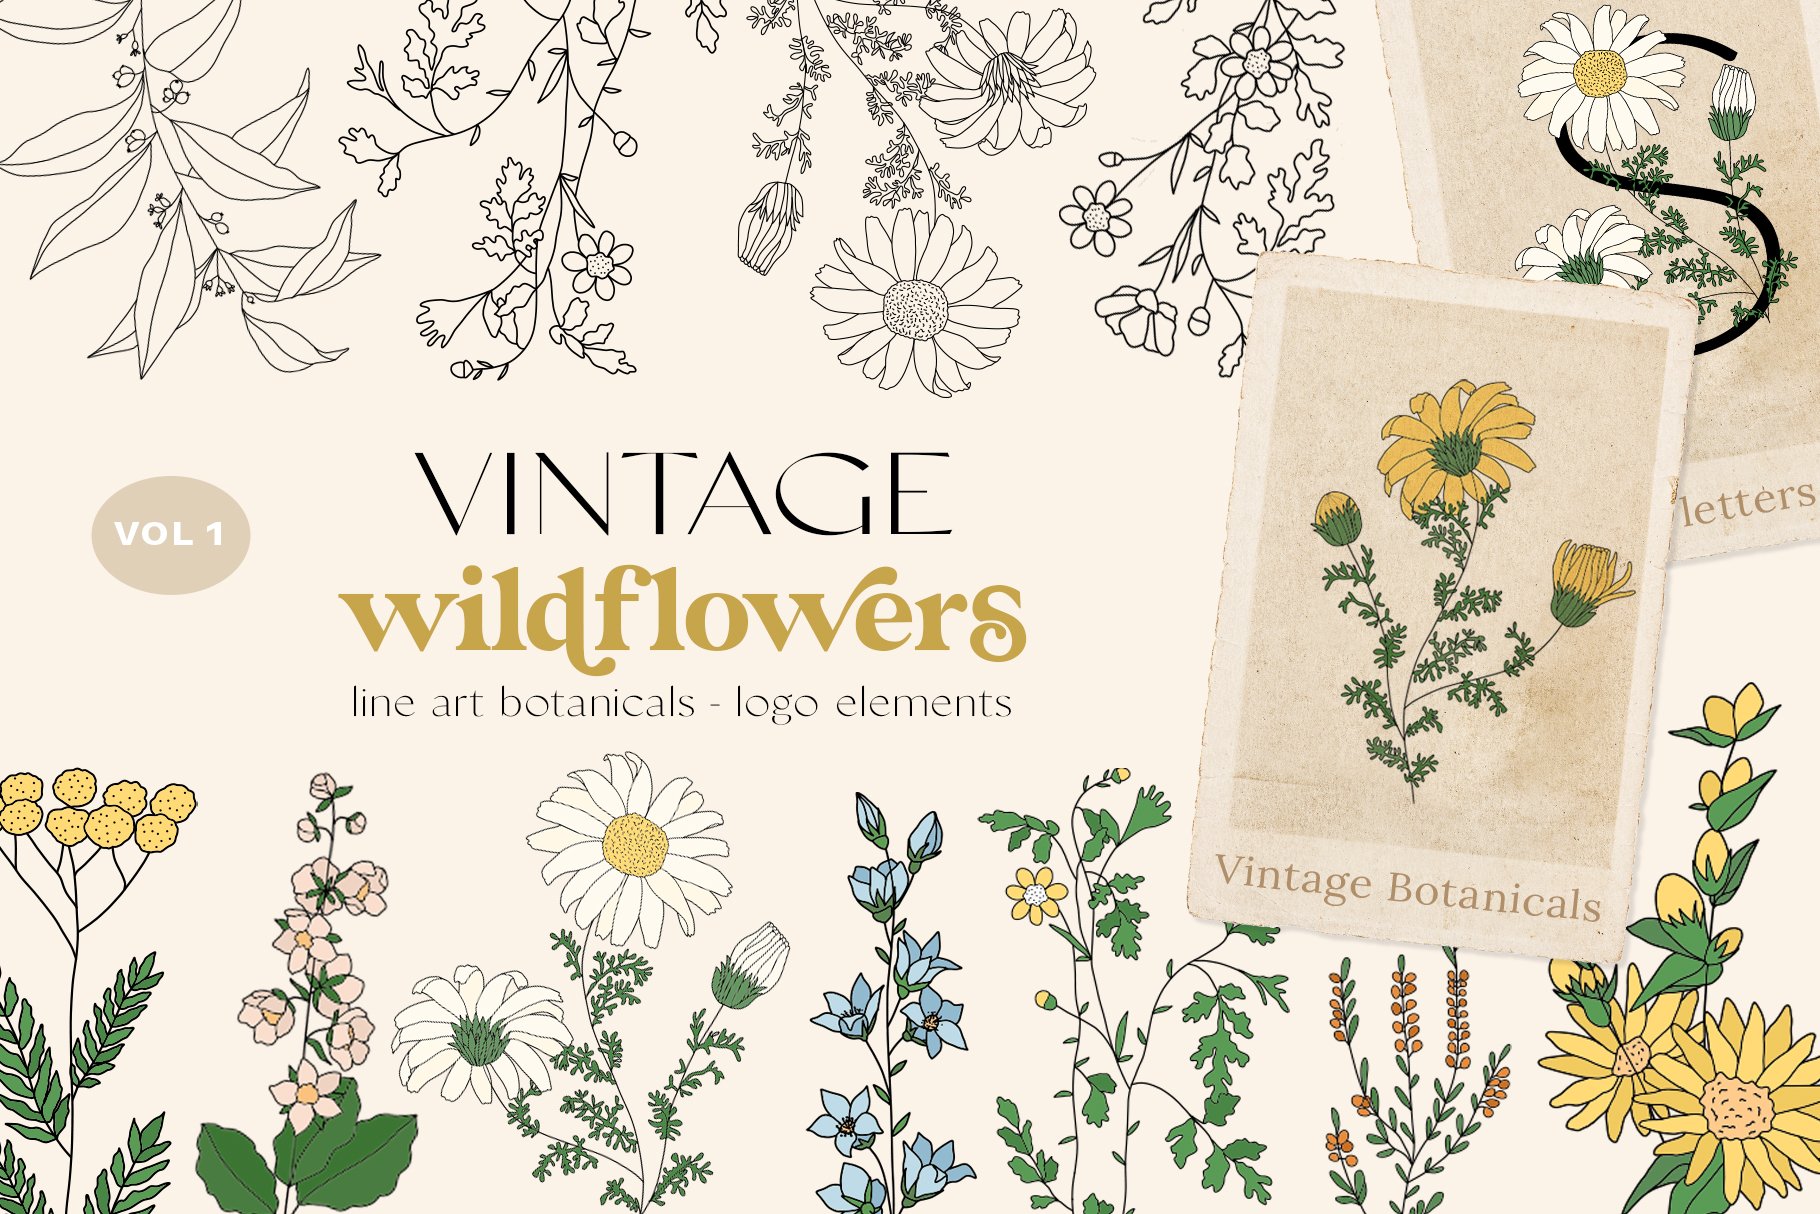 Wildflowers Botanical Logo Elements cover image.